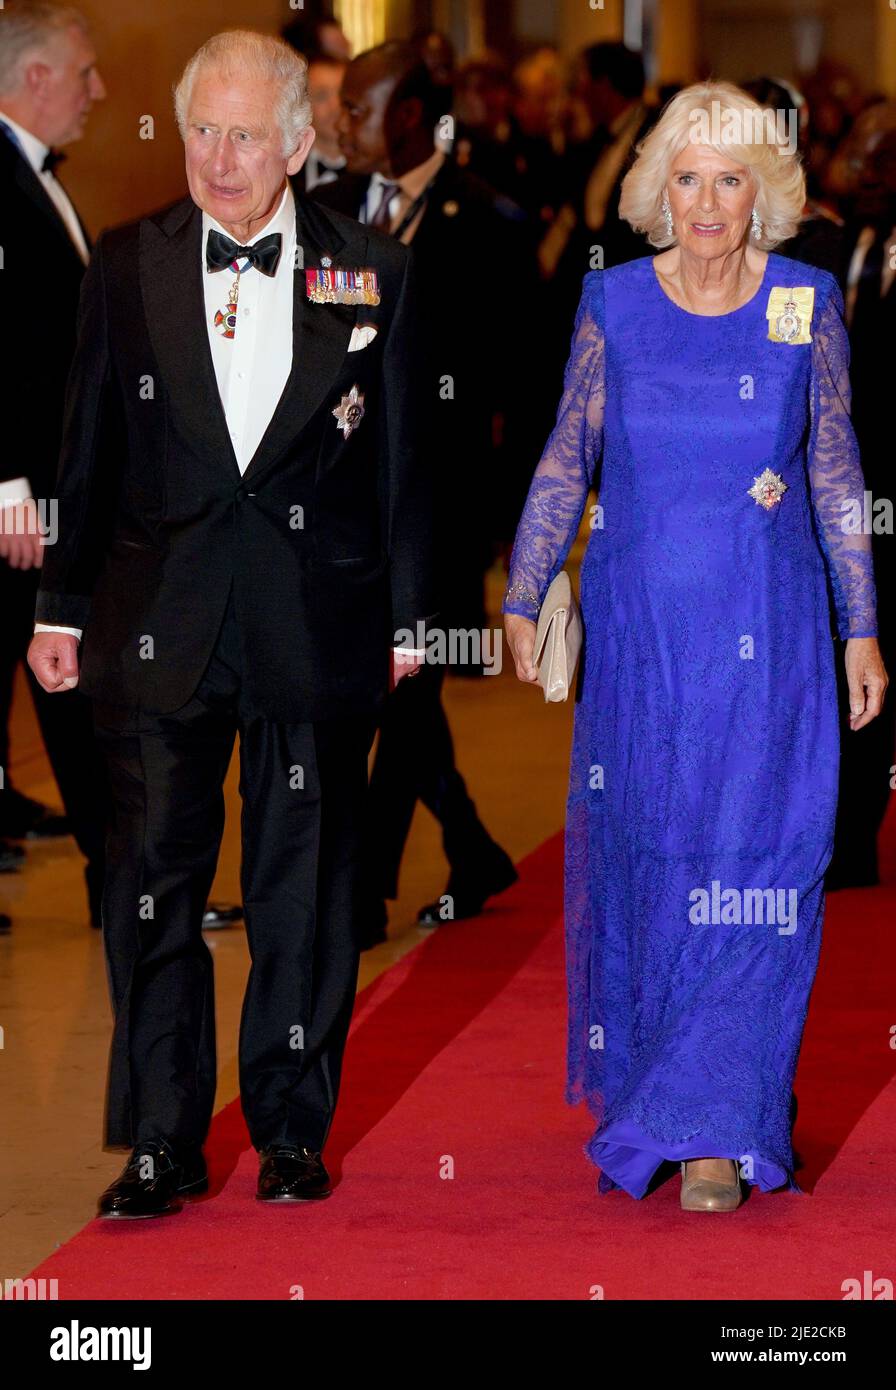 Le prince de Galles et la duchesse de Cornwall arrivent pour le dîner des chefs de gouvernement du Commonwealth à l'hôtel Marriott de Kigali, au Rwanda. Date de la photo: Vendredi 24 juin 2022. Banque D'Images